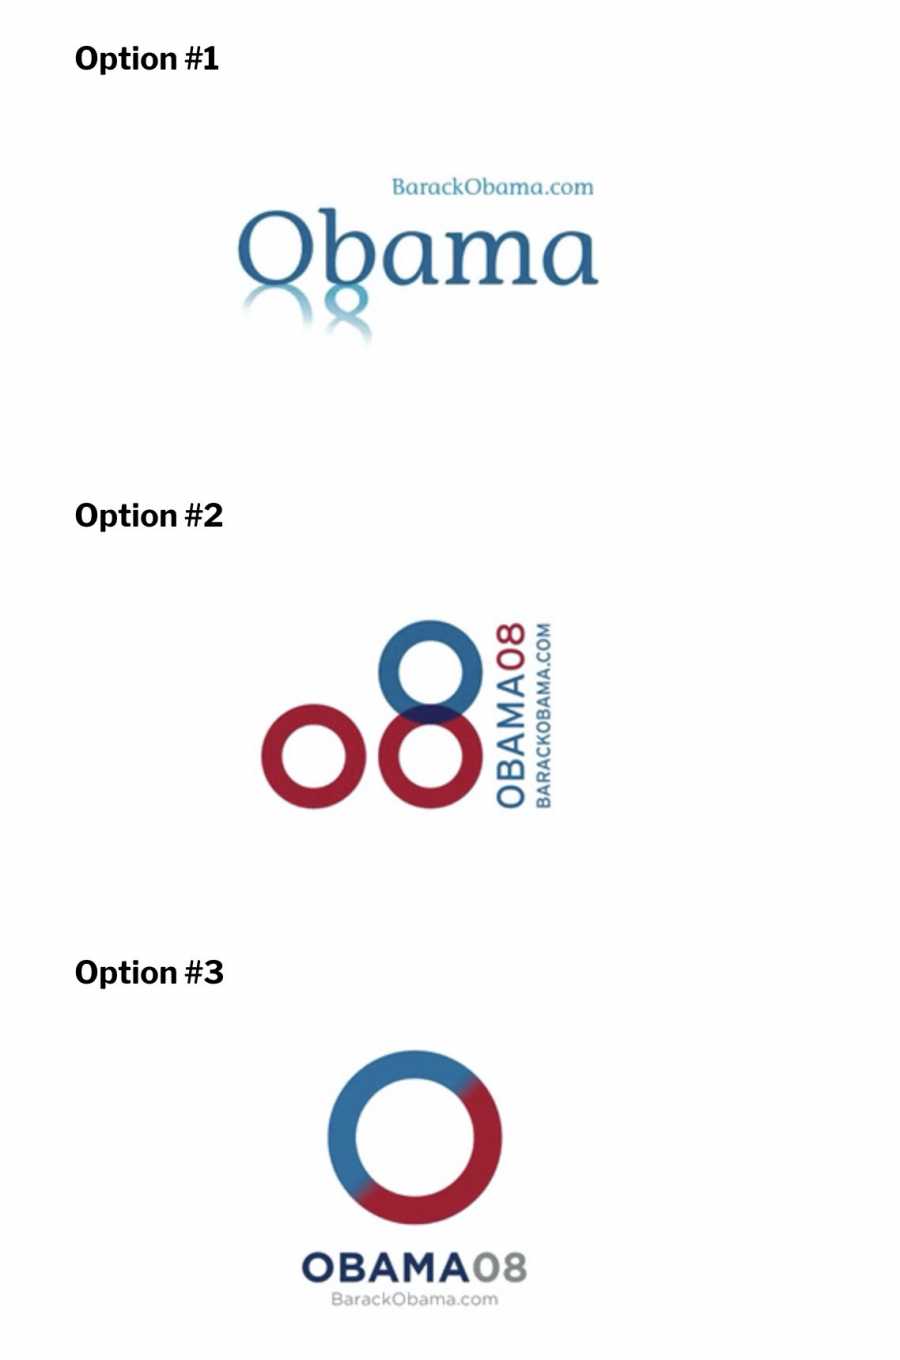 As imagens acima são dos 3 logos finalistas para a campanha que Barack Obama. No artigo abaixo, você ainda pode ver todos os outros logos que foram desenvolvidos e ler sobre a visão do designer quanto a todos eles. Leitura obrigatória.